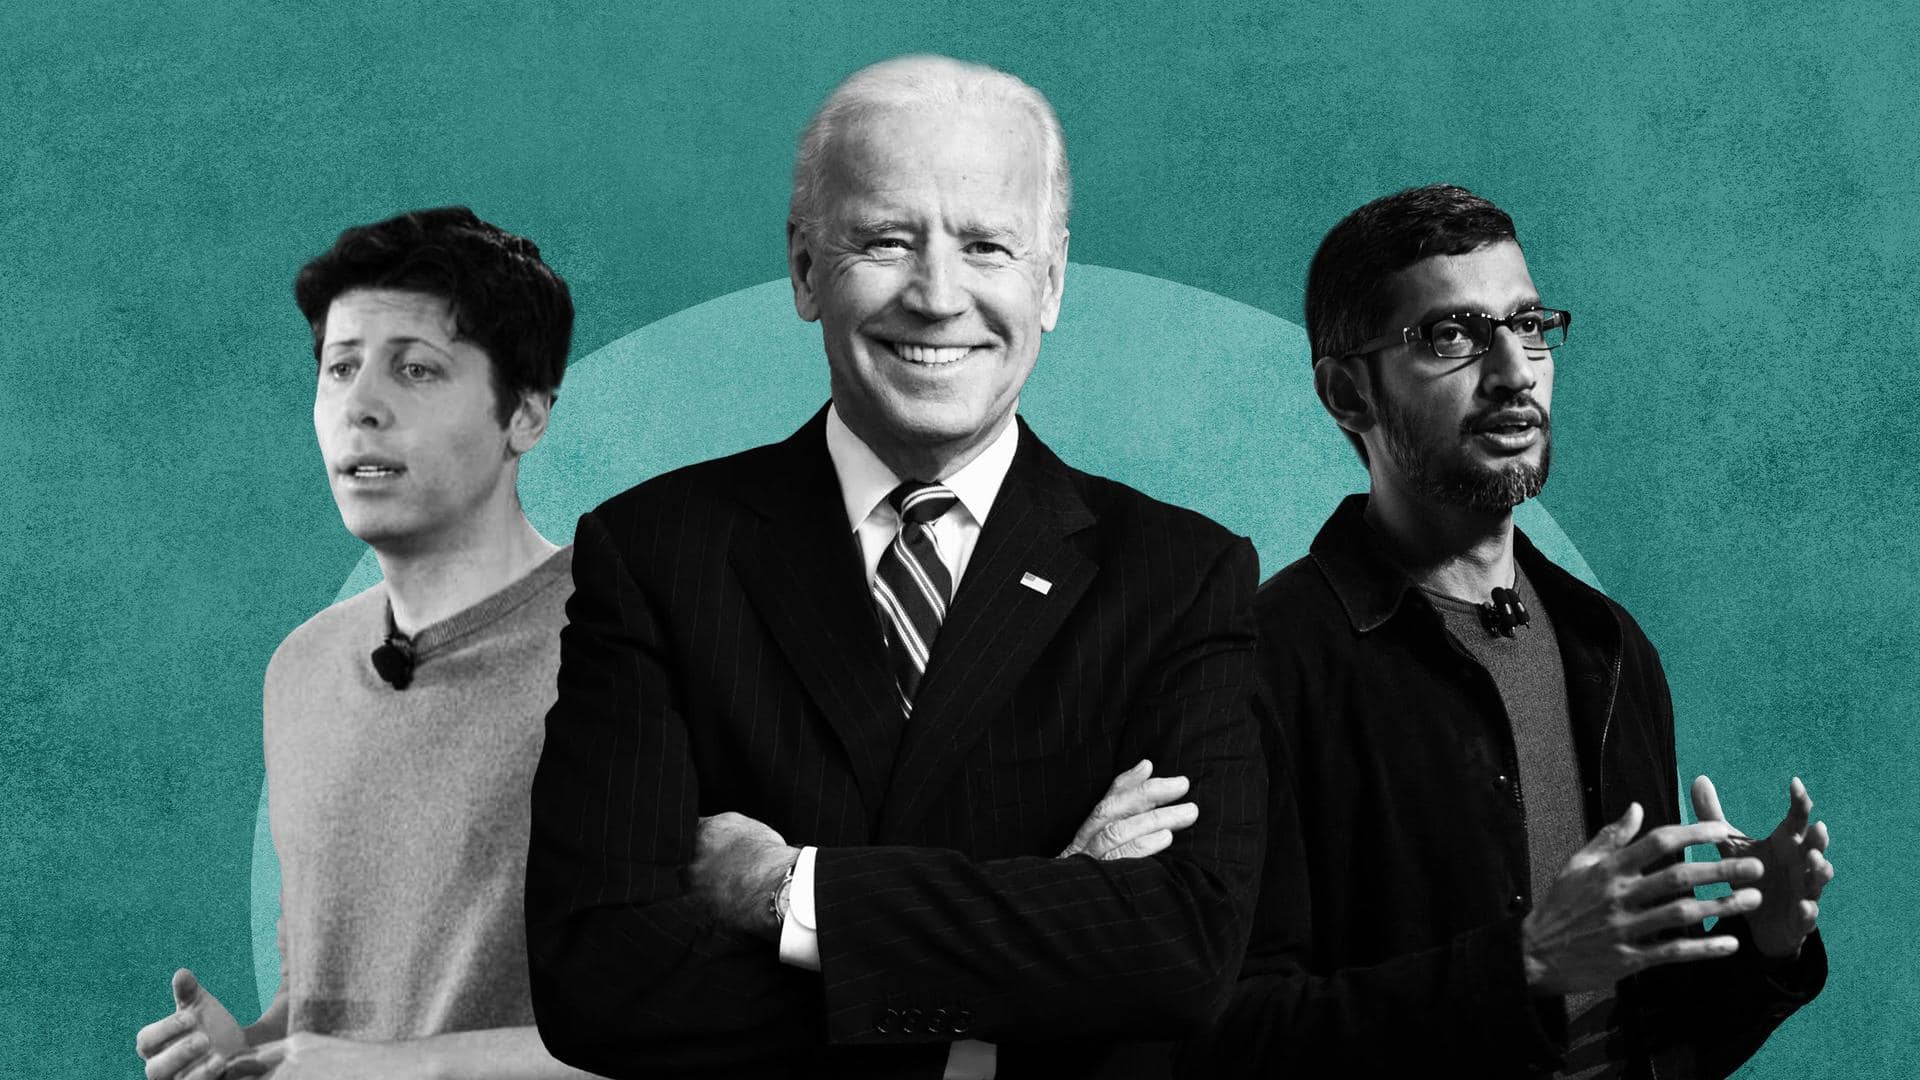 Joe Biden meets CEOs of AI companies: Key takeaways